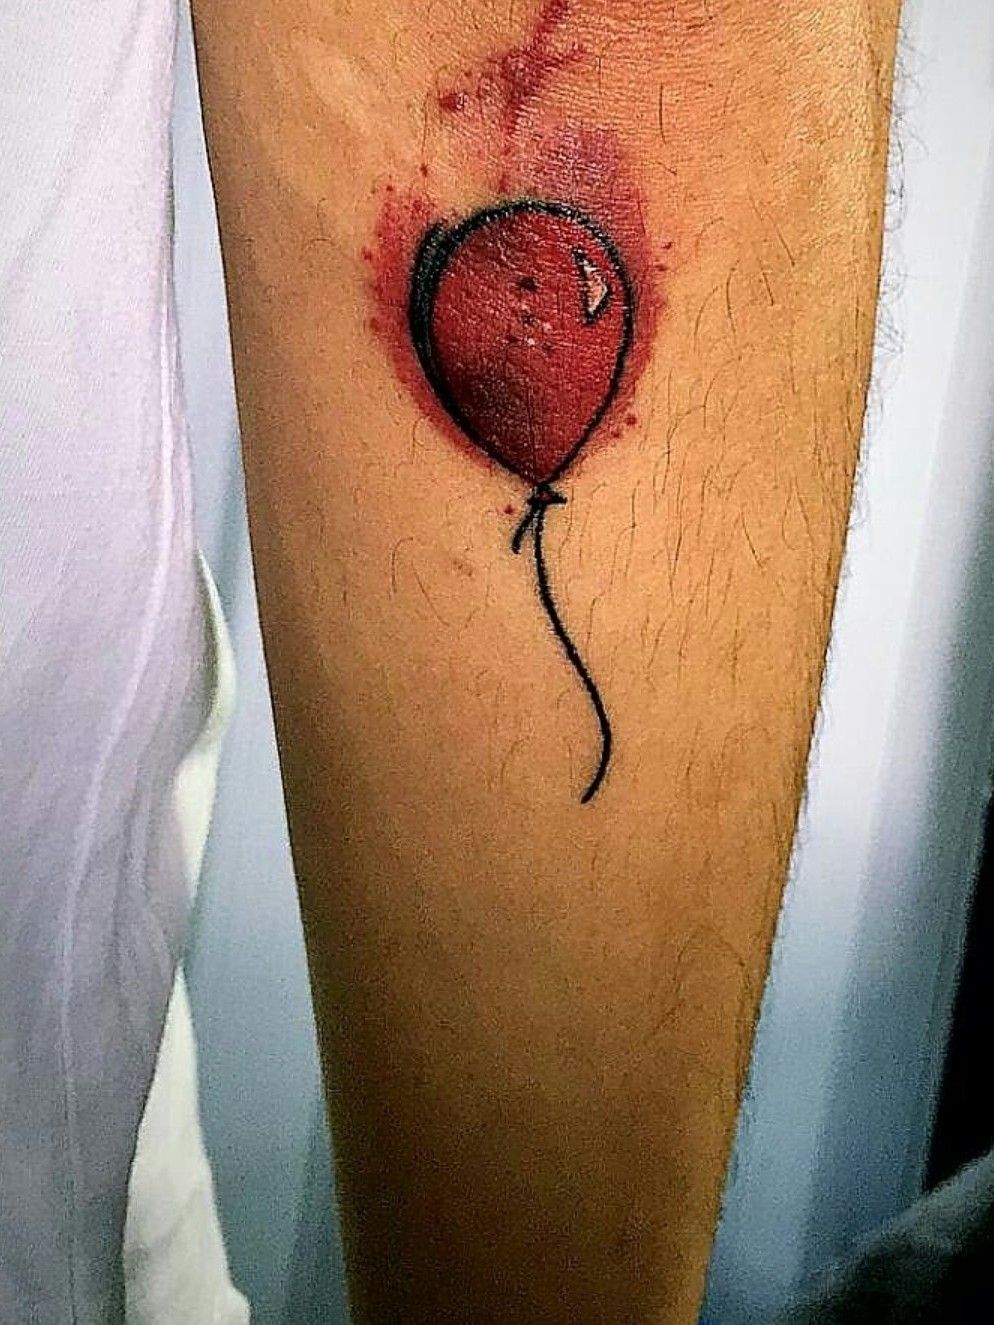 Tattoo uploaded by Daniel Ito • It - Red Balloon #it #acoisa #redballoon  #balaovermelho • Tattoodo